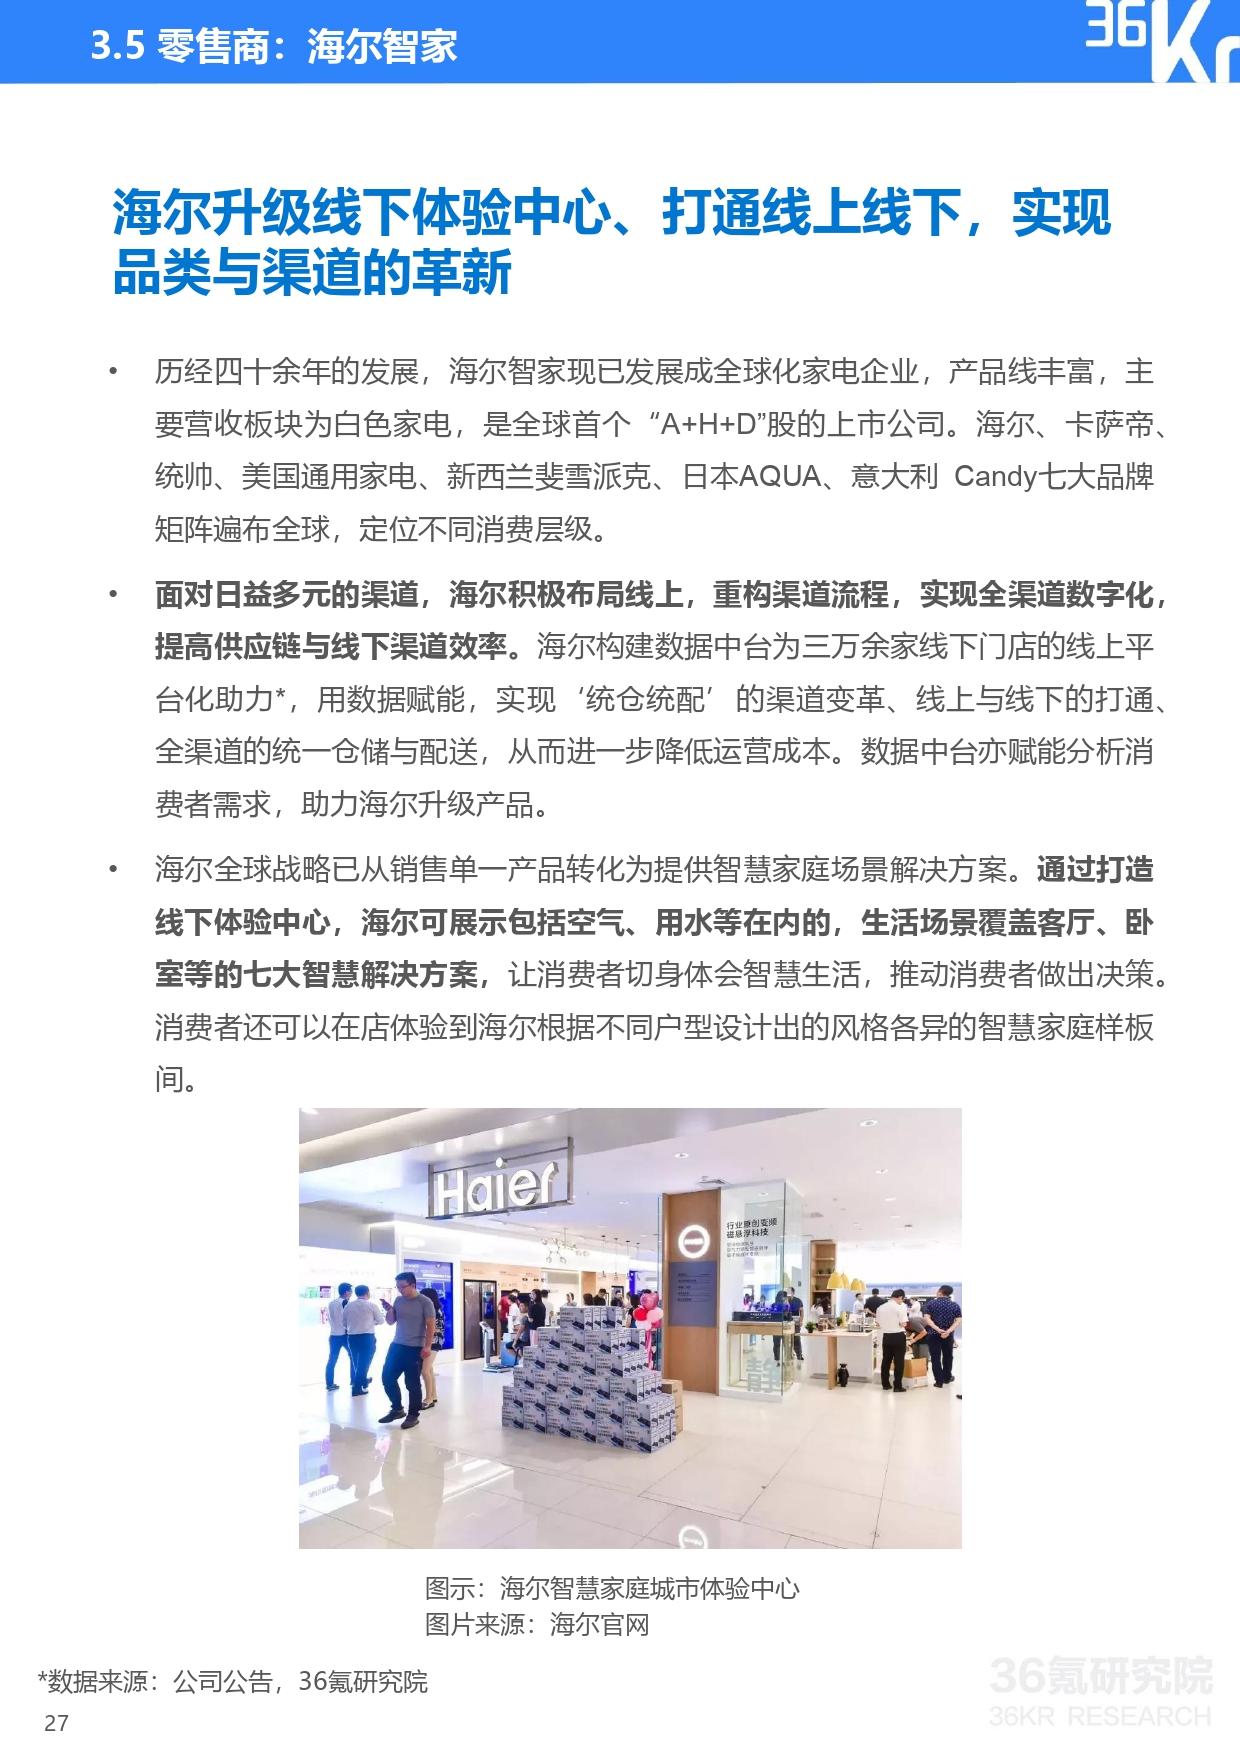 36氪研究院 | 2021年中国零售OMO研究报告